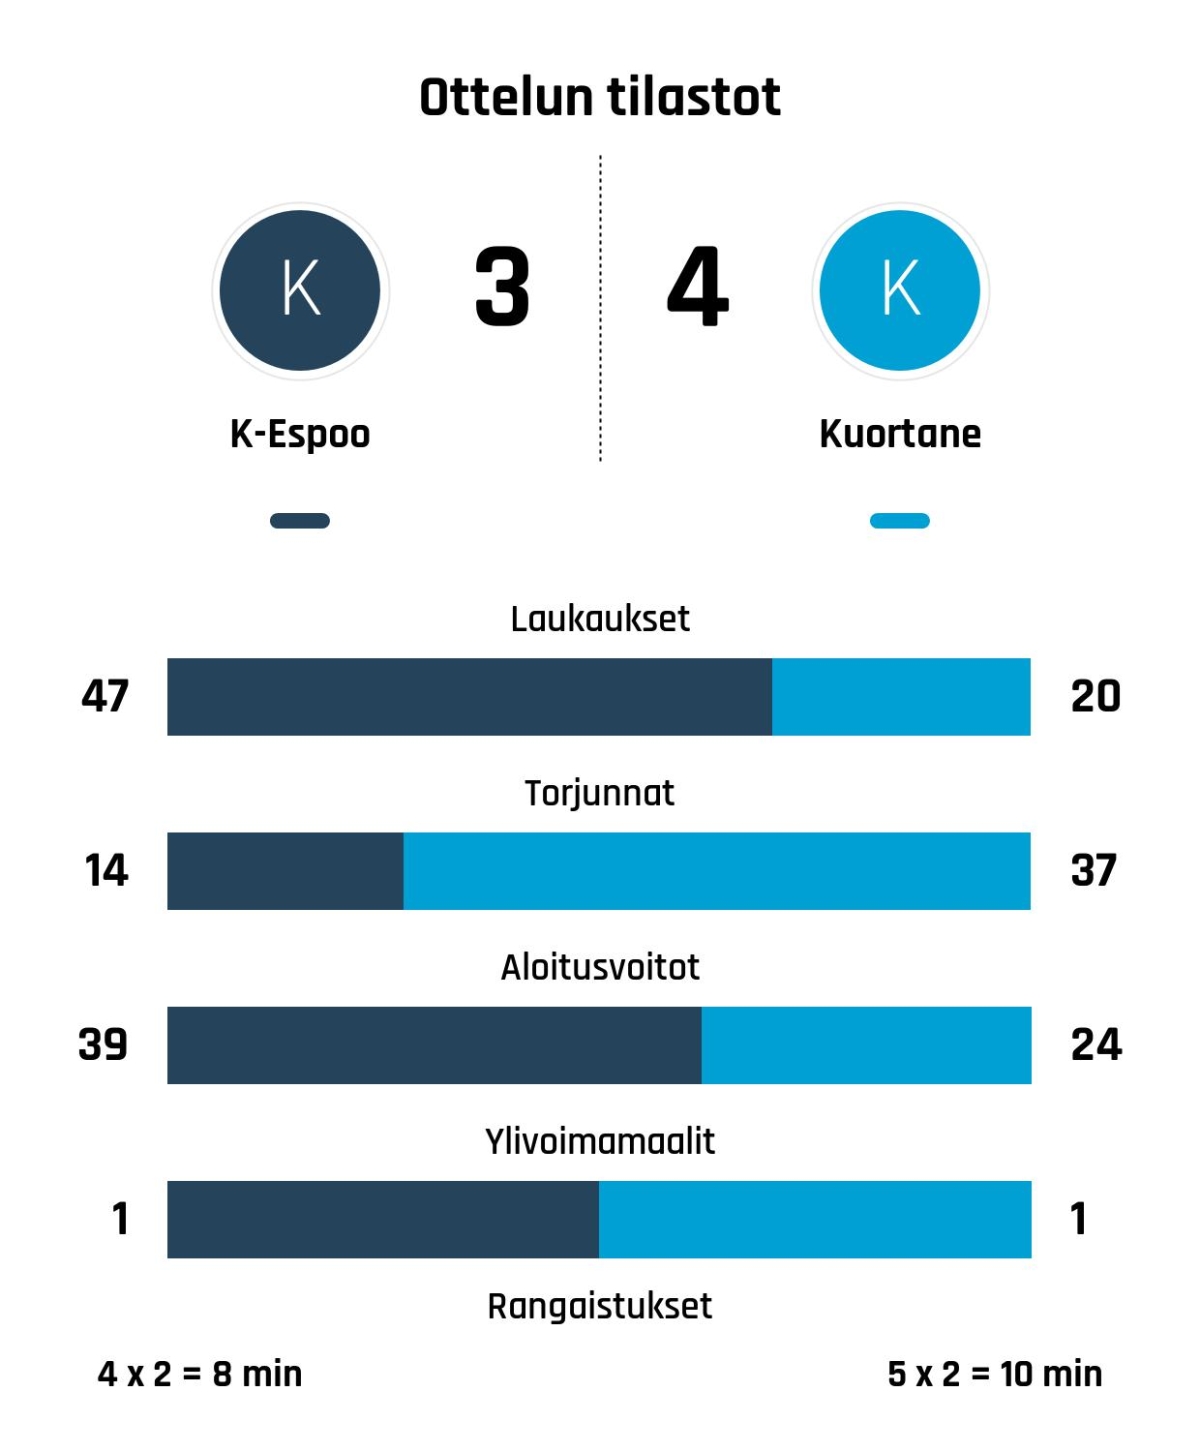 Kuortane nousi rinnalle ja ohi – Kiekko-Espoo kaatui 4-3